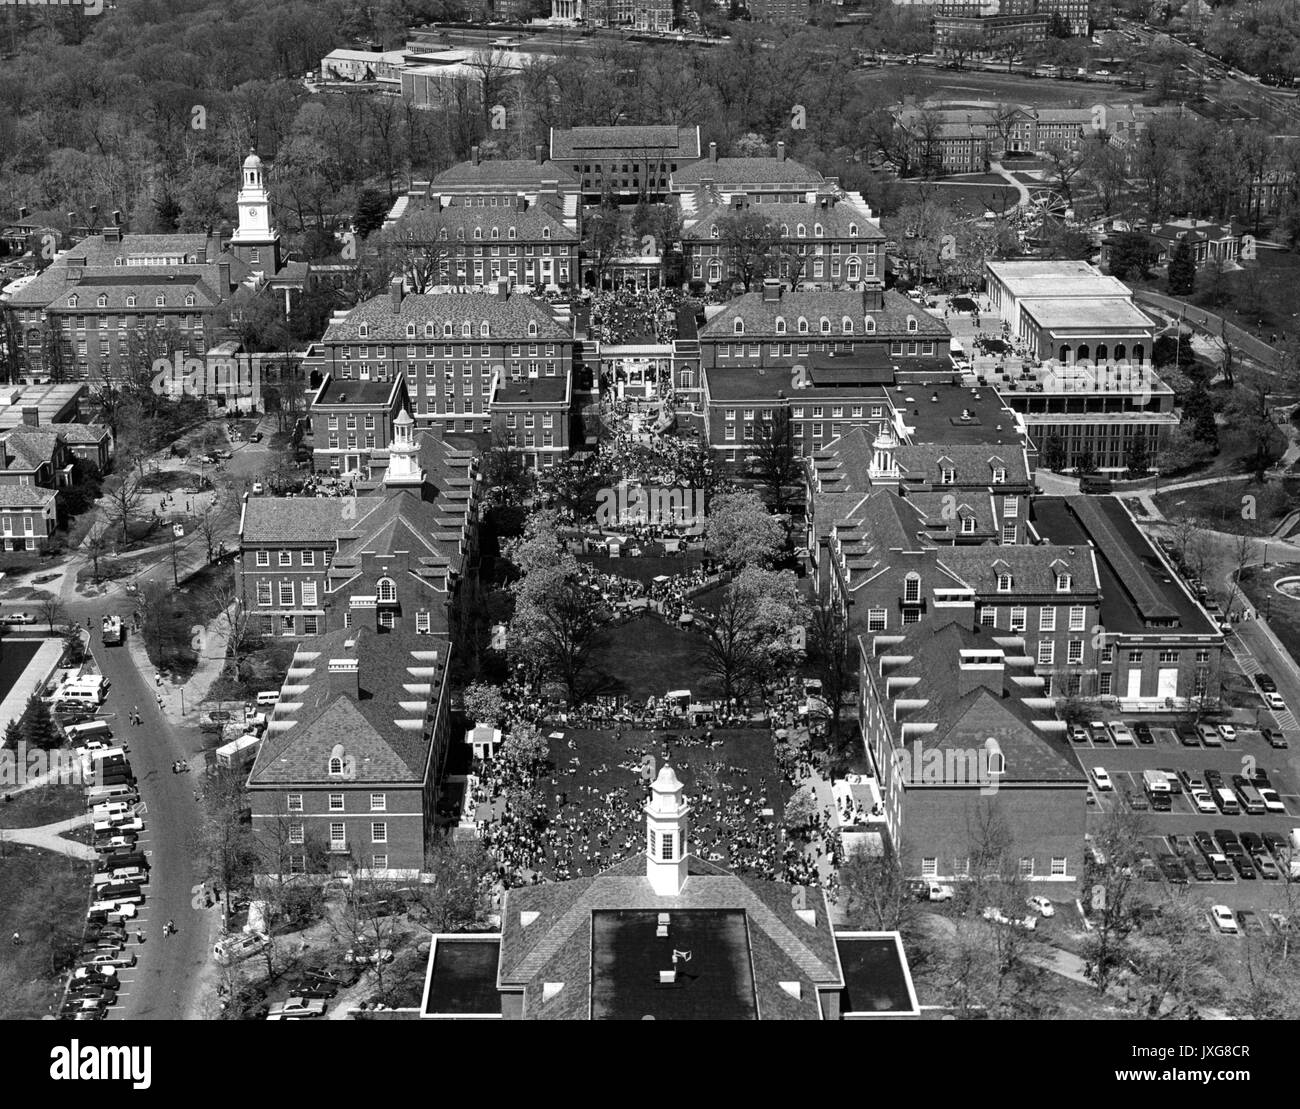 Vedute aeree, Homewood riprese aeree del Homewood campus, prese a nord da Shriver Hall, qualche tipo di festival è ocurring nel campus, come evidenziato da una ruota panoramica Ferris in background, 1970. Foto Stock